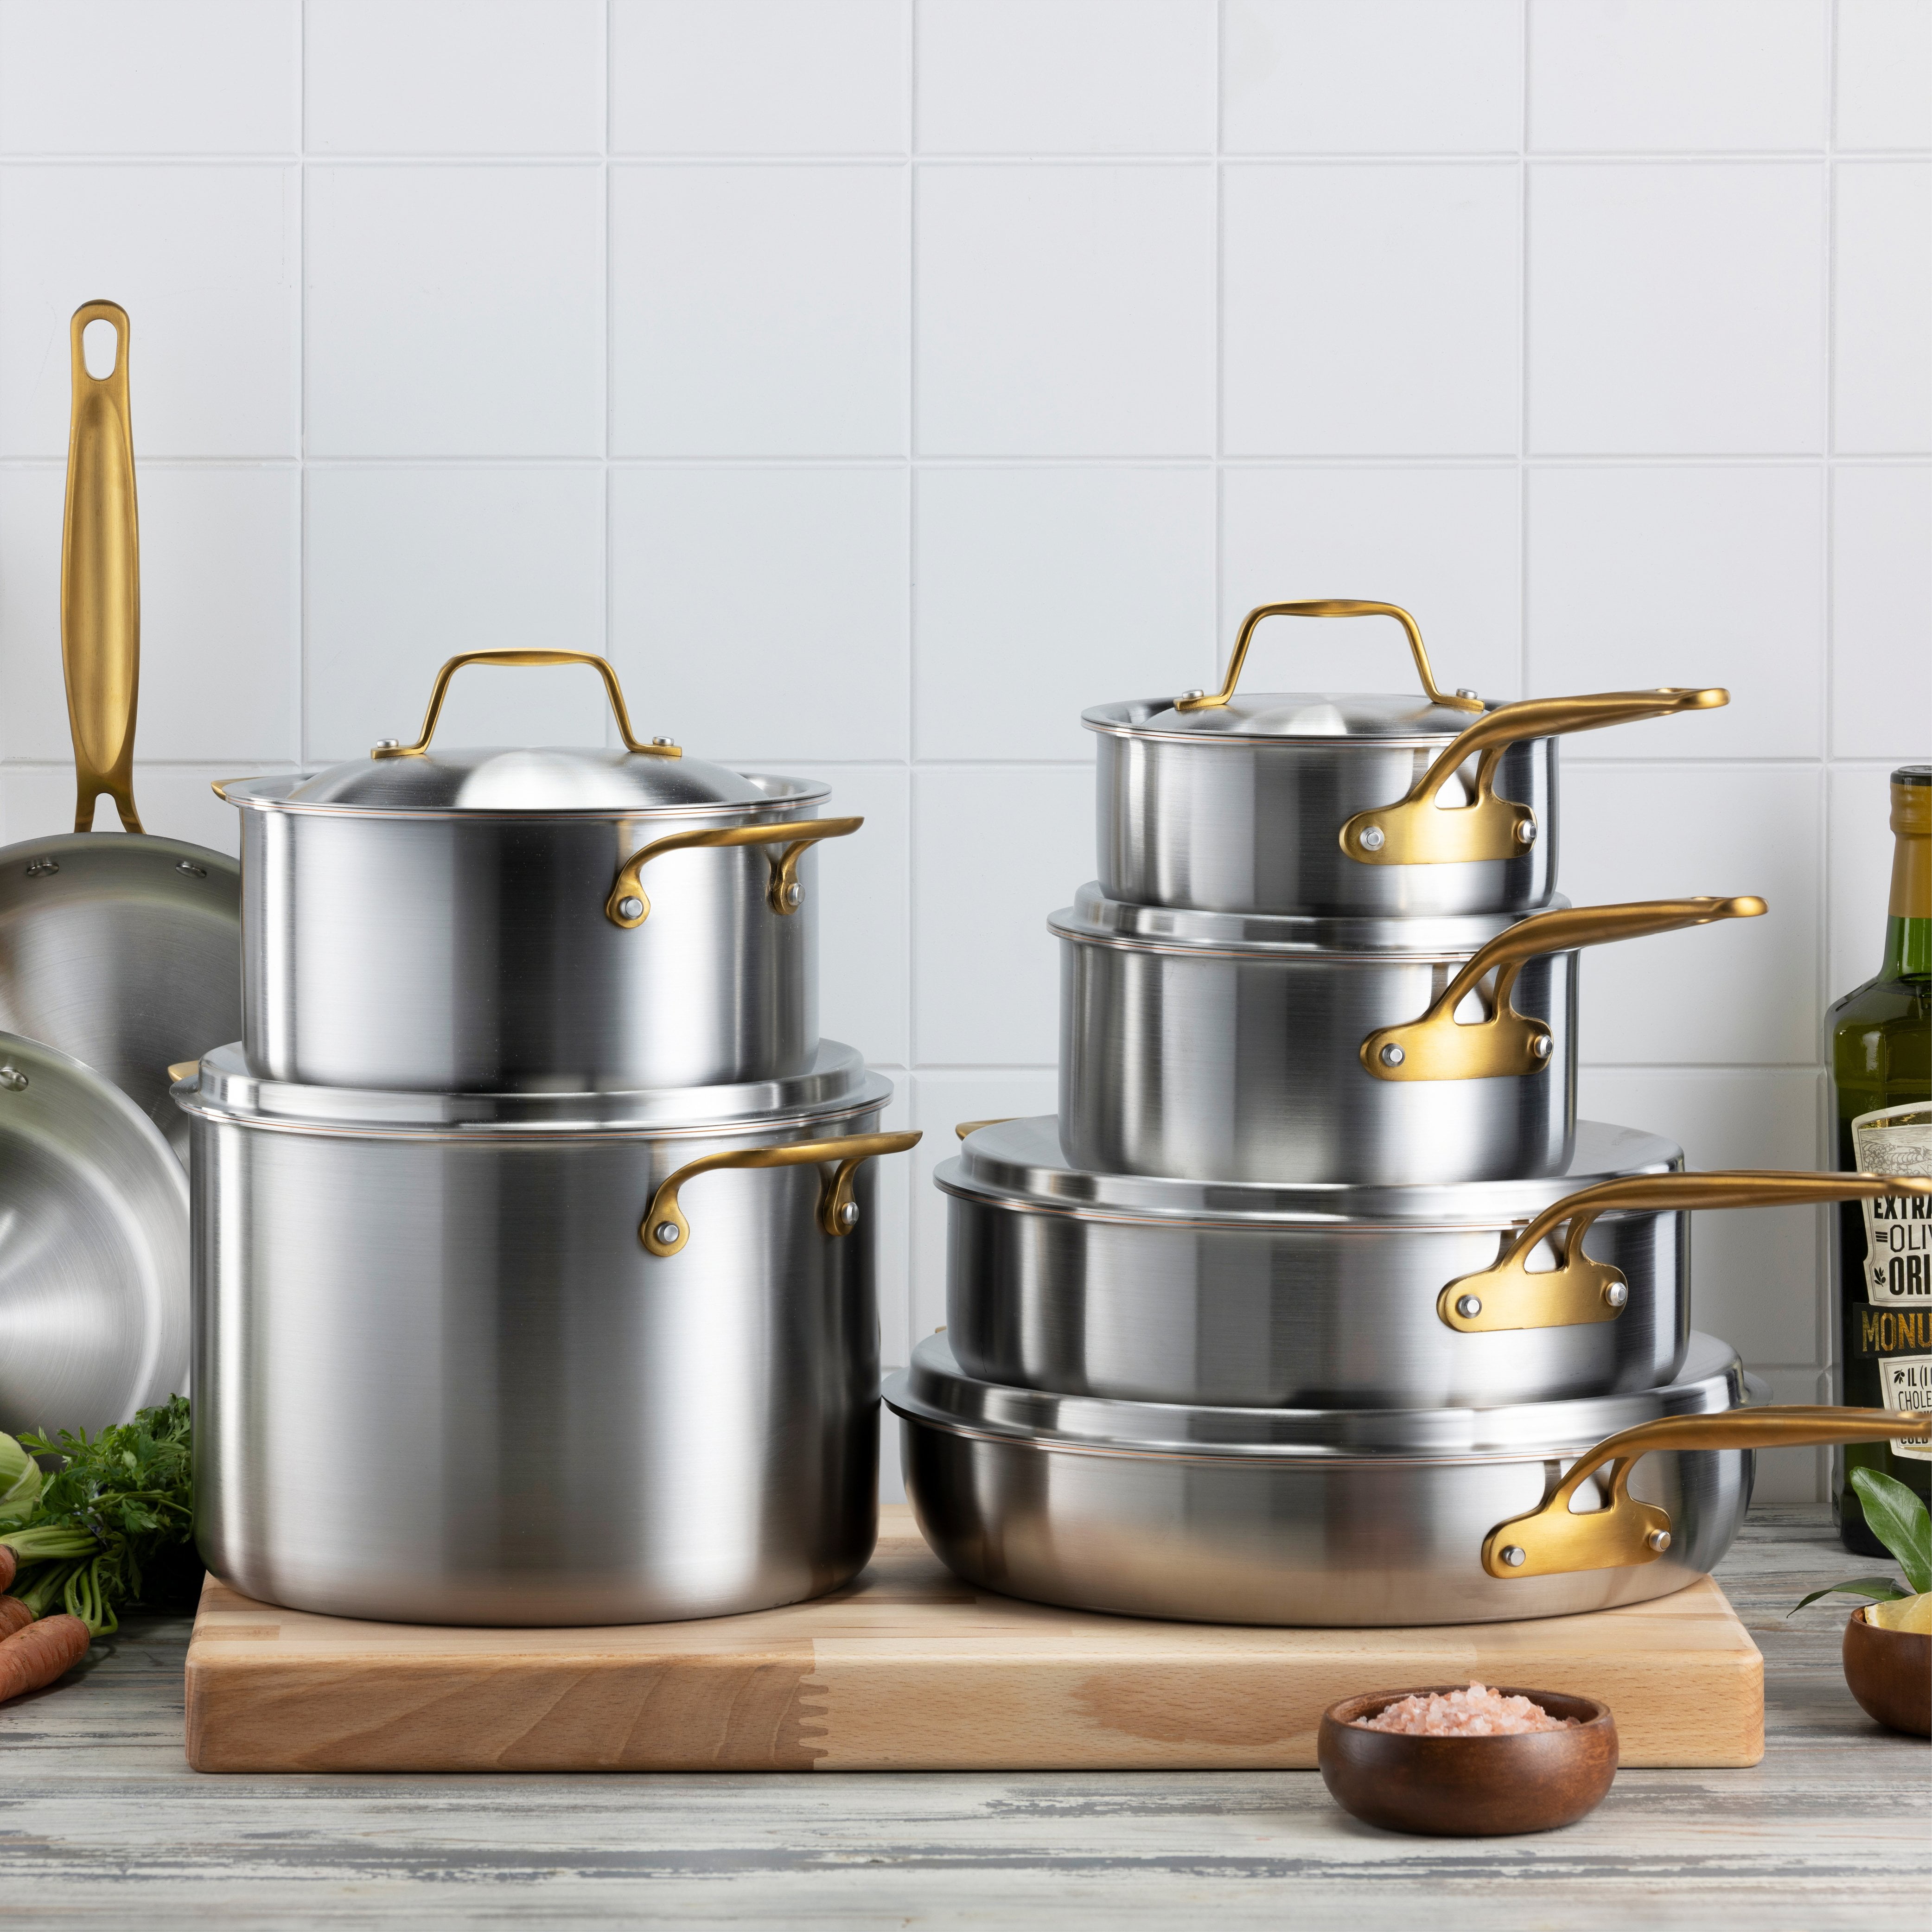 Legend 5 Quart 10 Saute Pan w/Lid Copper Core 5 ply Stainless Steel | Home  Chef Grade Clad Deep 5qt 5ply Large Sauté Pot | For Cooking Soup, Steamer